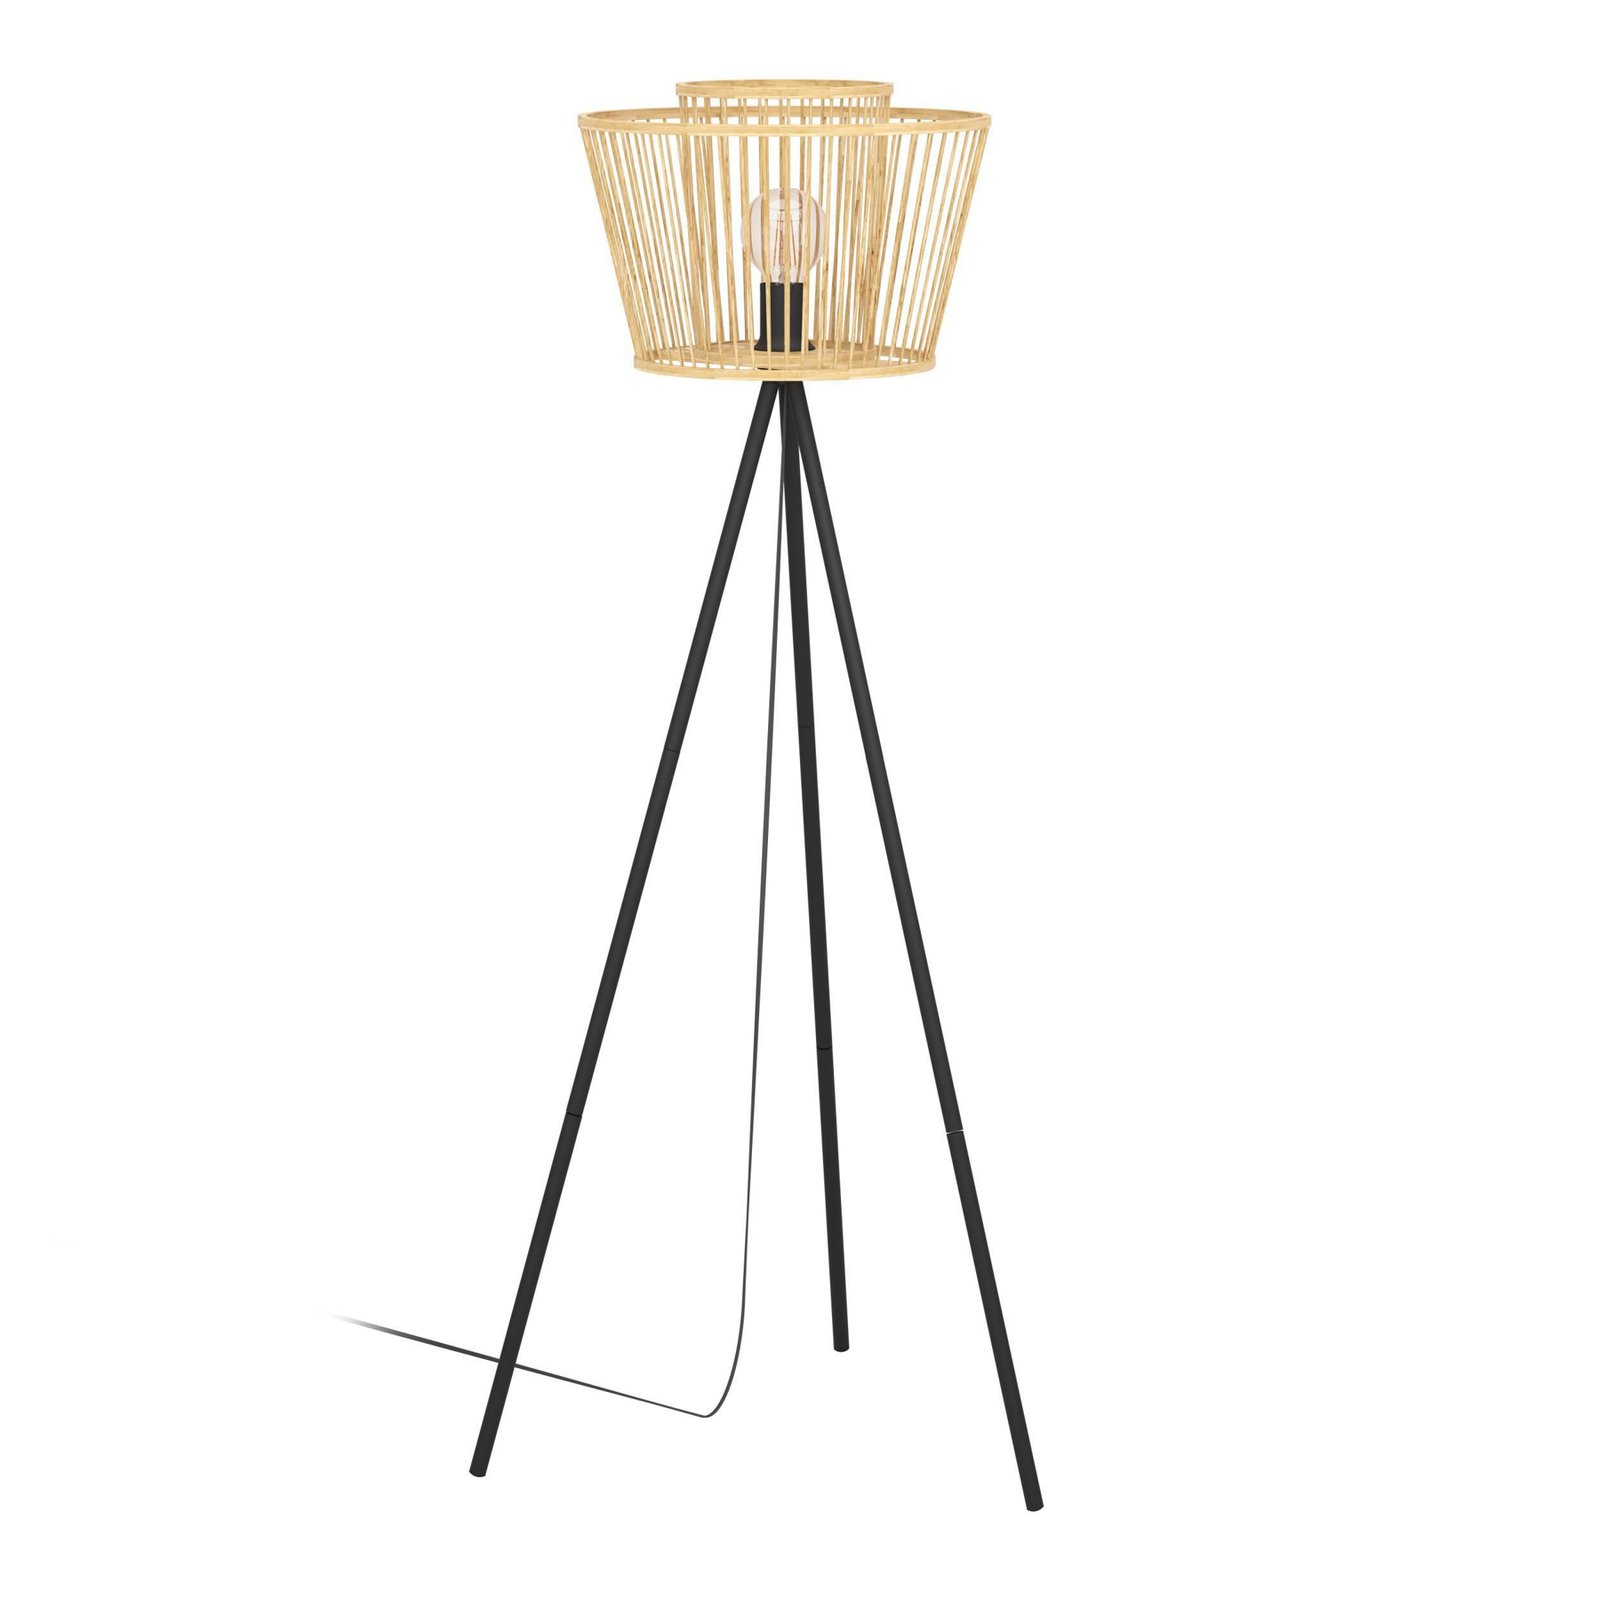 Stojací lampa Hykeham, výška 129,5 cm, přírodní/černá, bambus